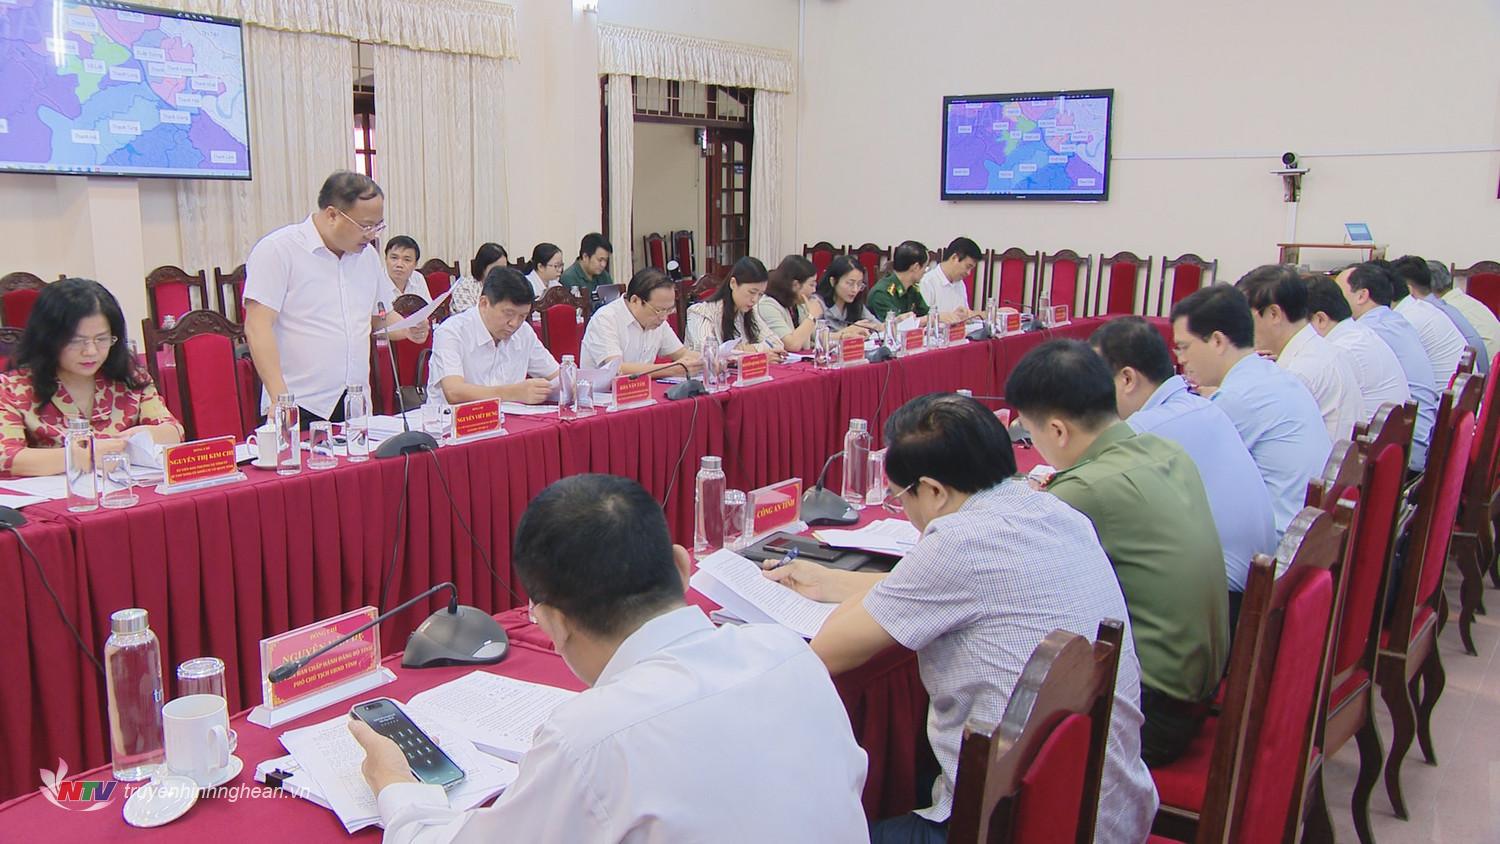 Đồng chí Nguyễn Viết Hưng - Giám đốc Sở Nội vụ phát biểu tại cuộc họp.